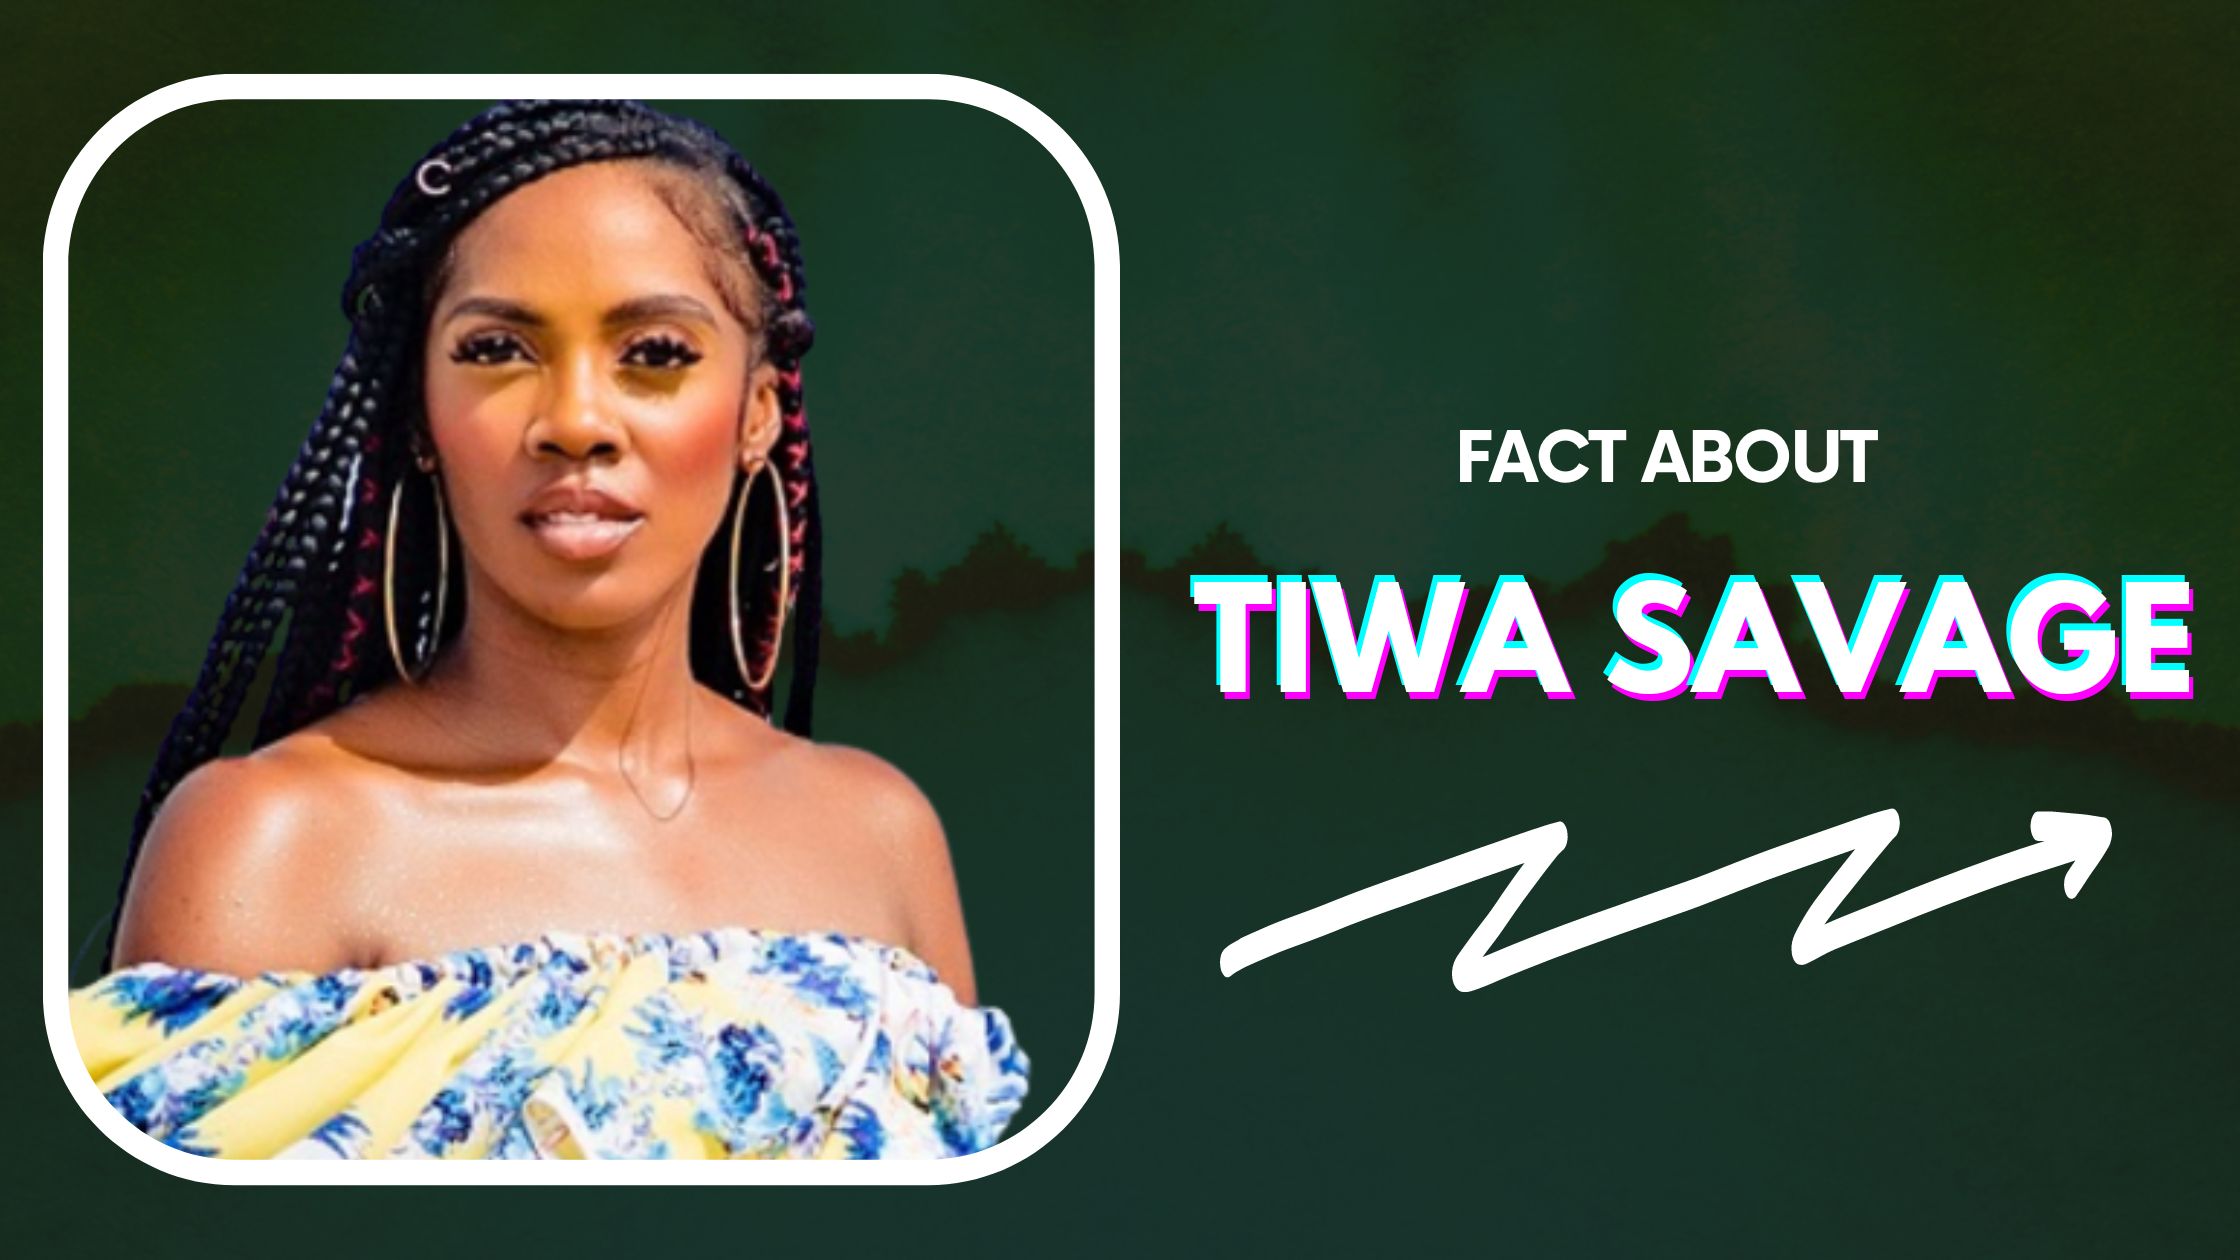 5 Interesting Facts About Tiwa Savage